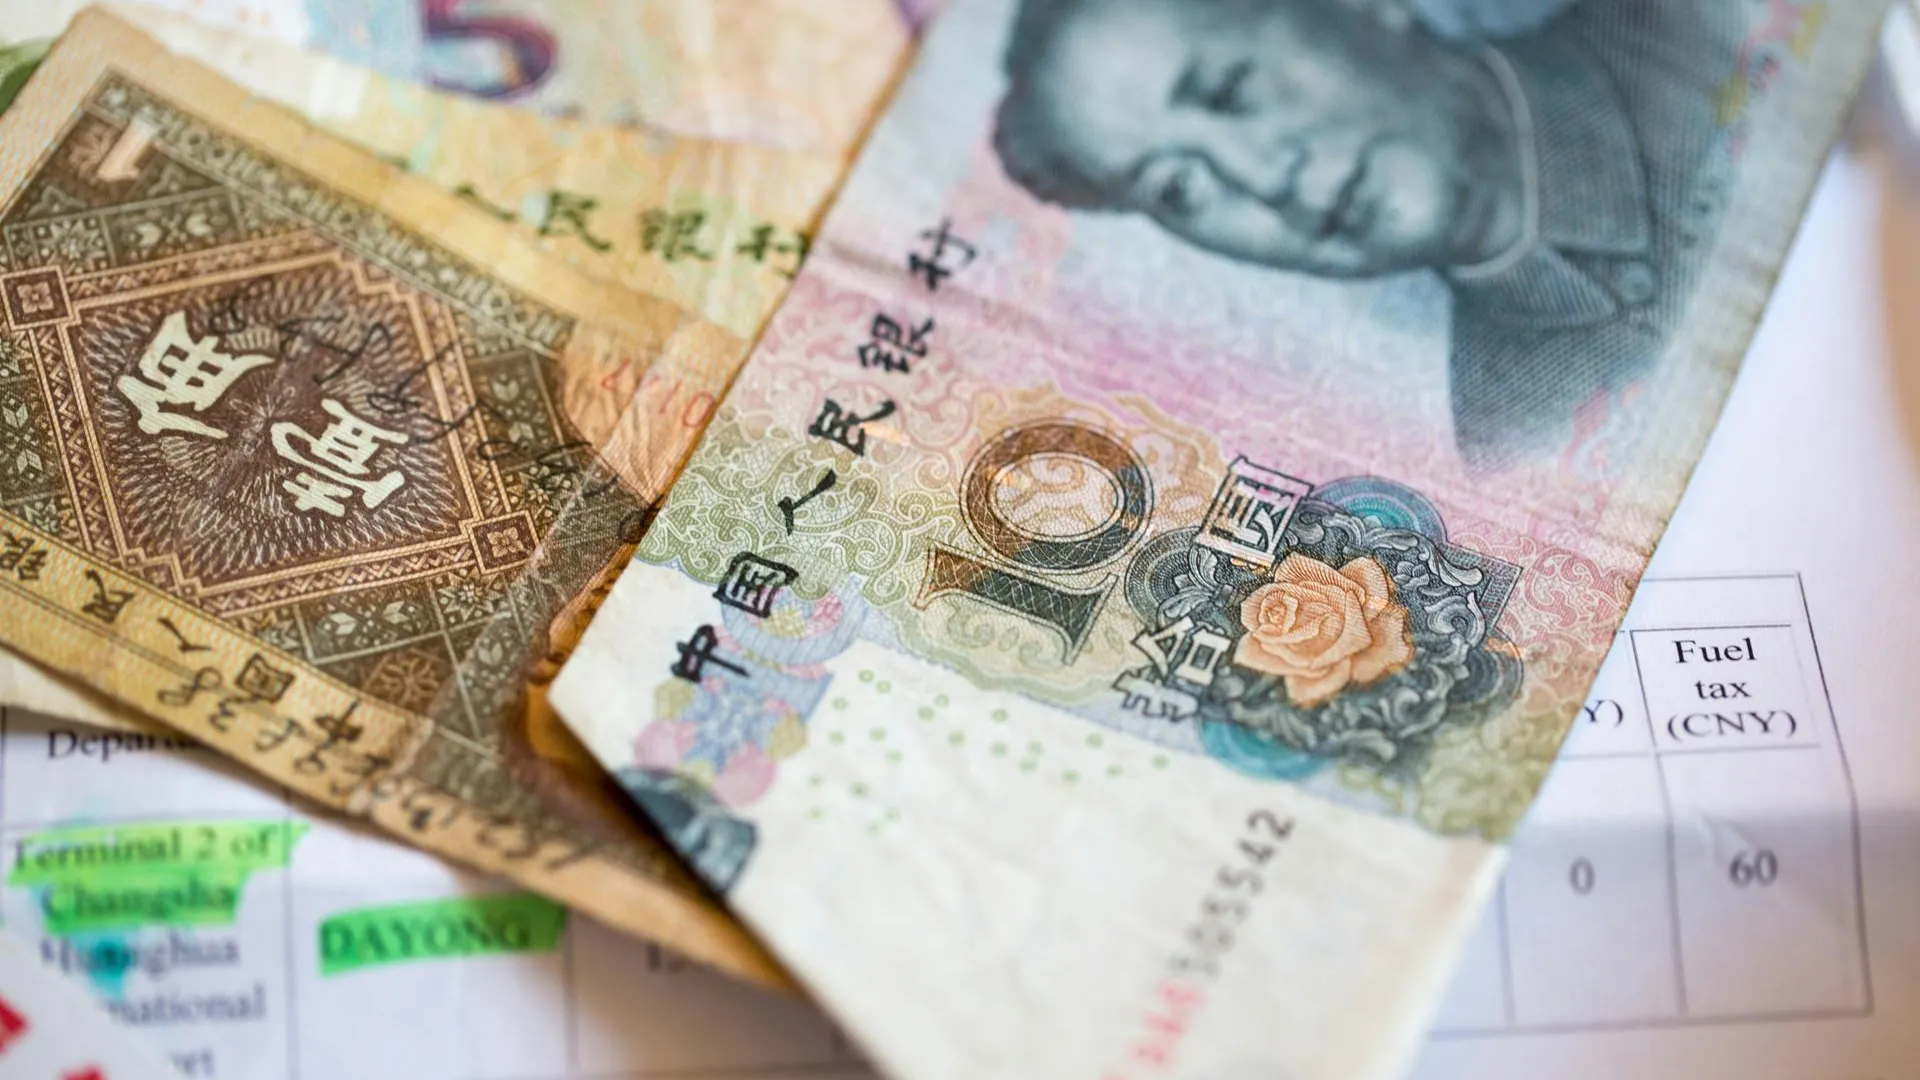 Эксперт: китайский юань остается под давлением экономических реалий в КНР